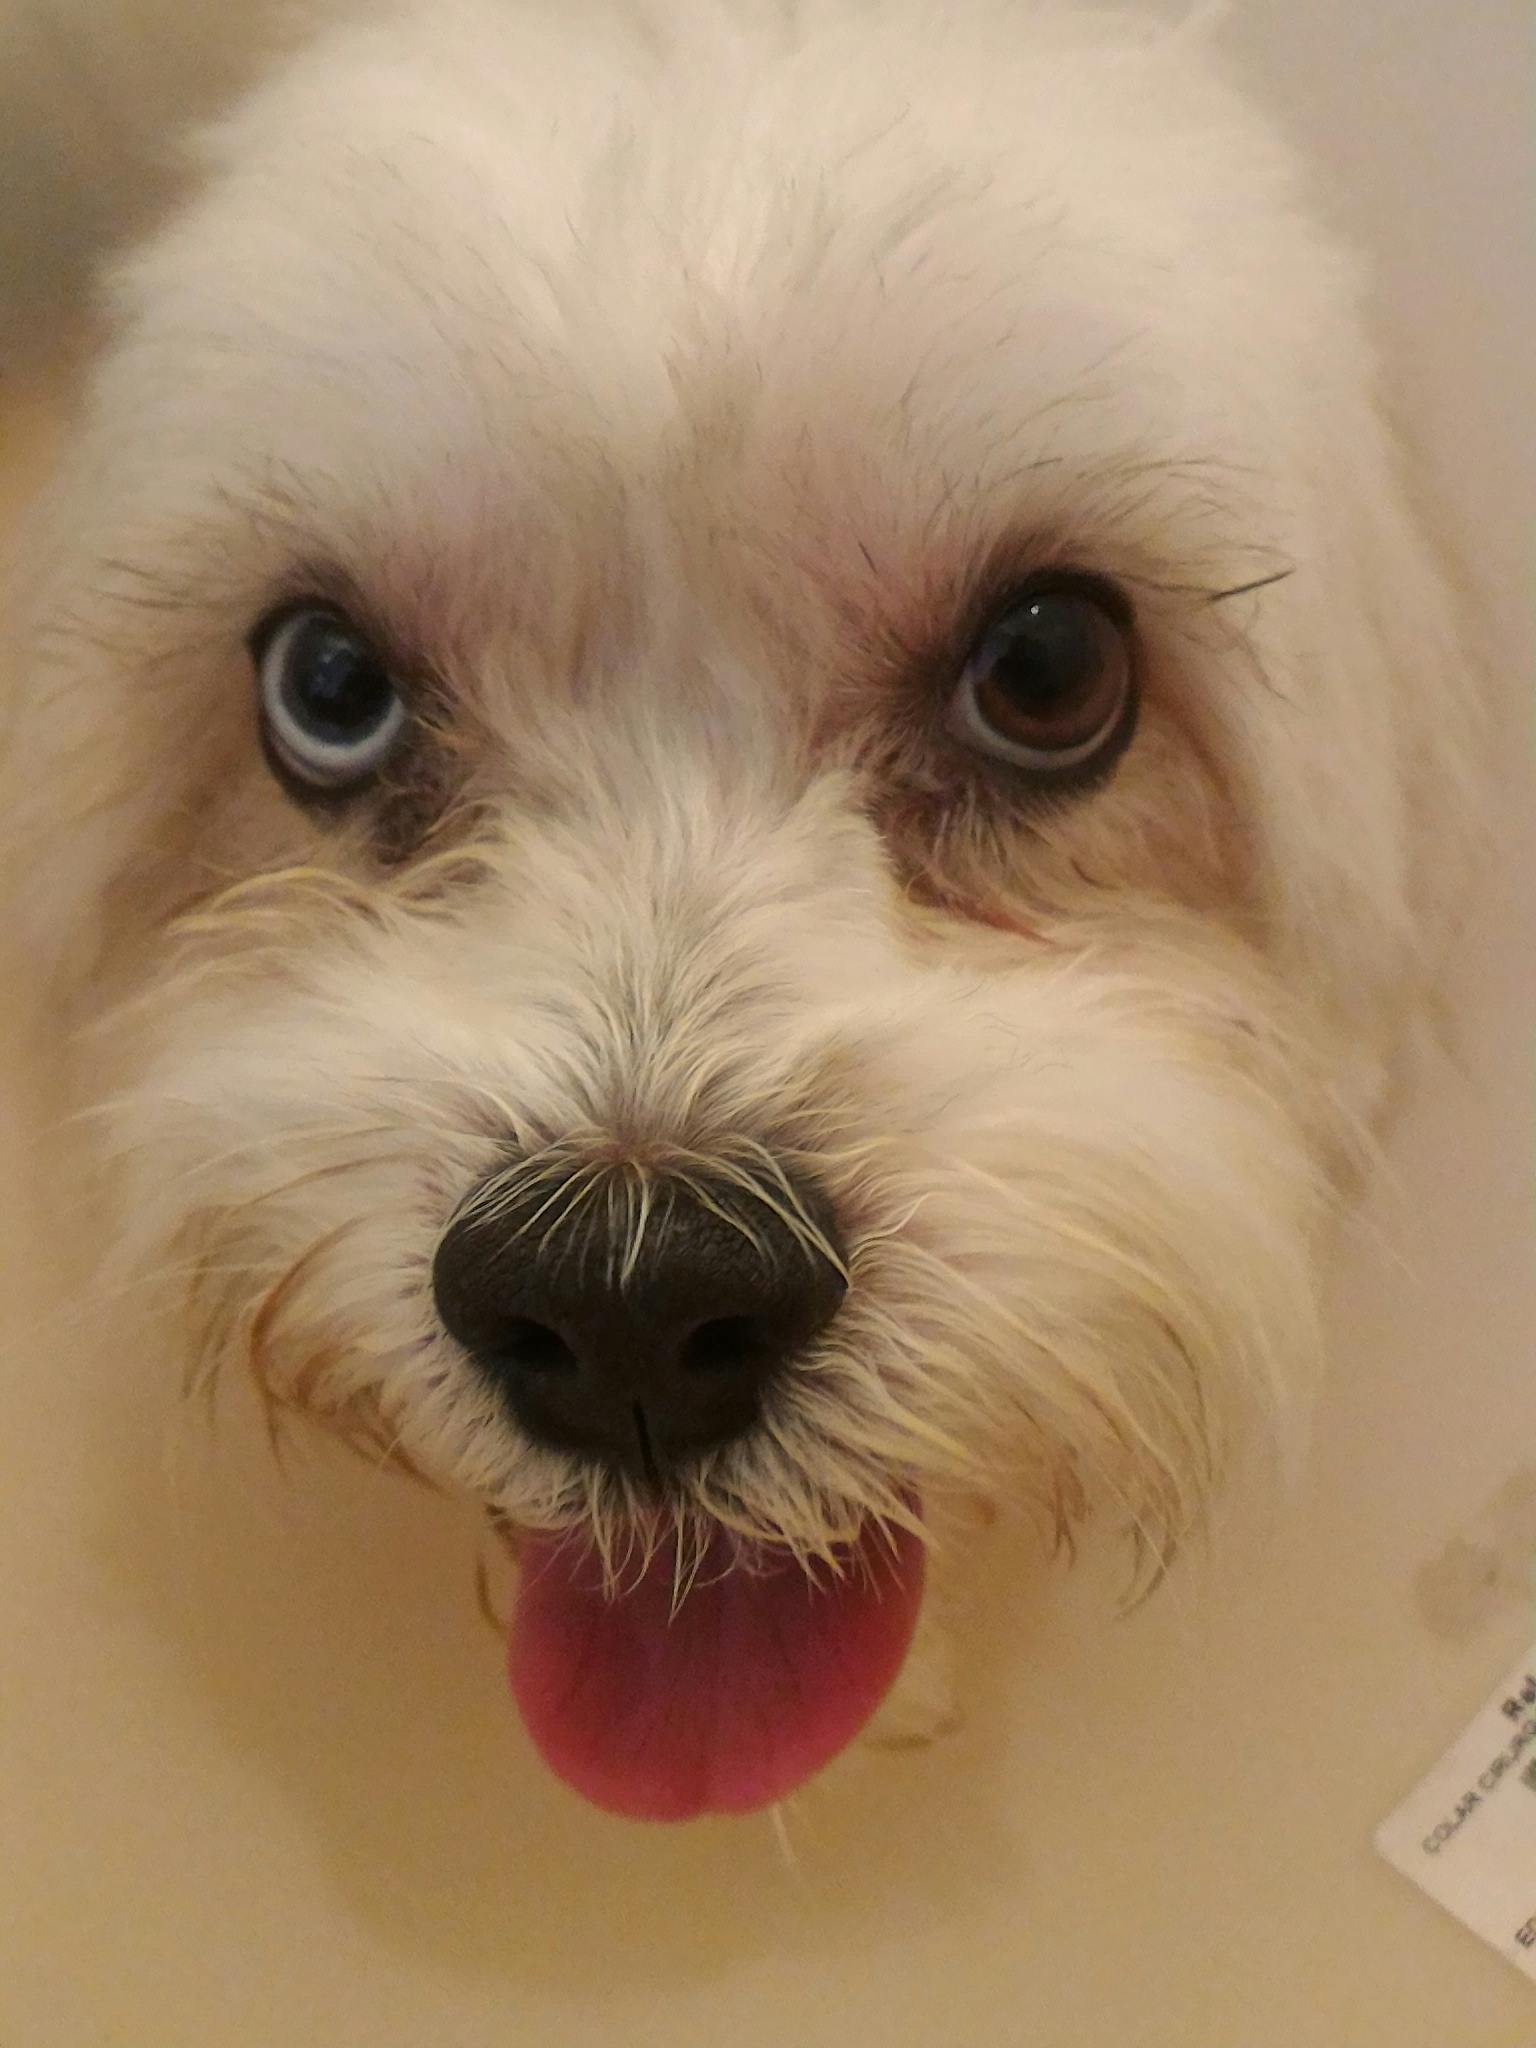 Free stock photo of Cachorro, dog, dog's nose